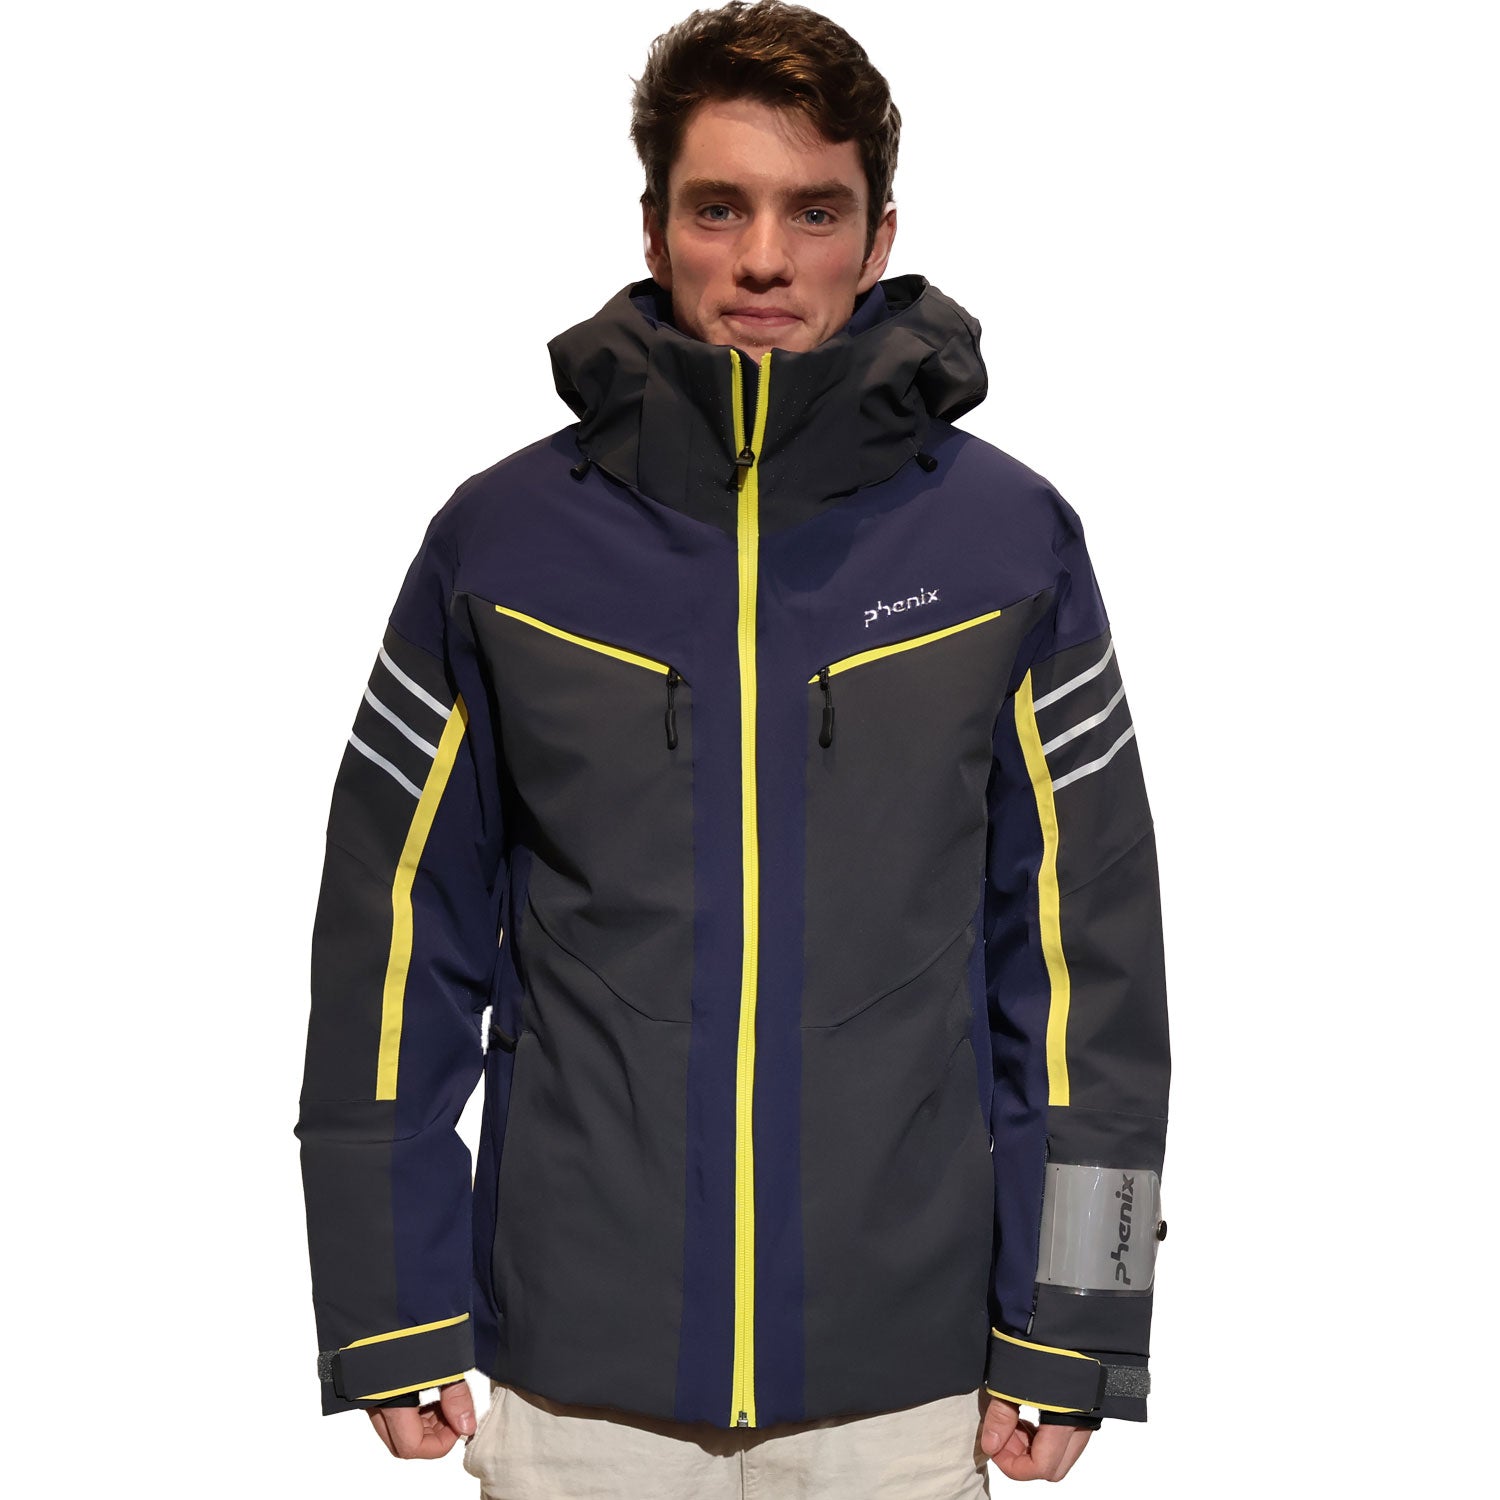 Twinpeaks Ski Jacket